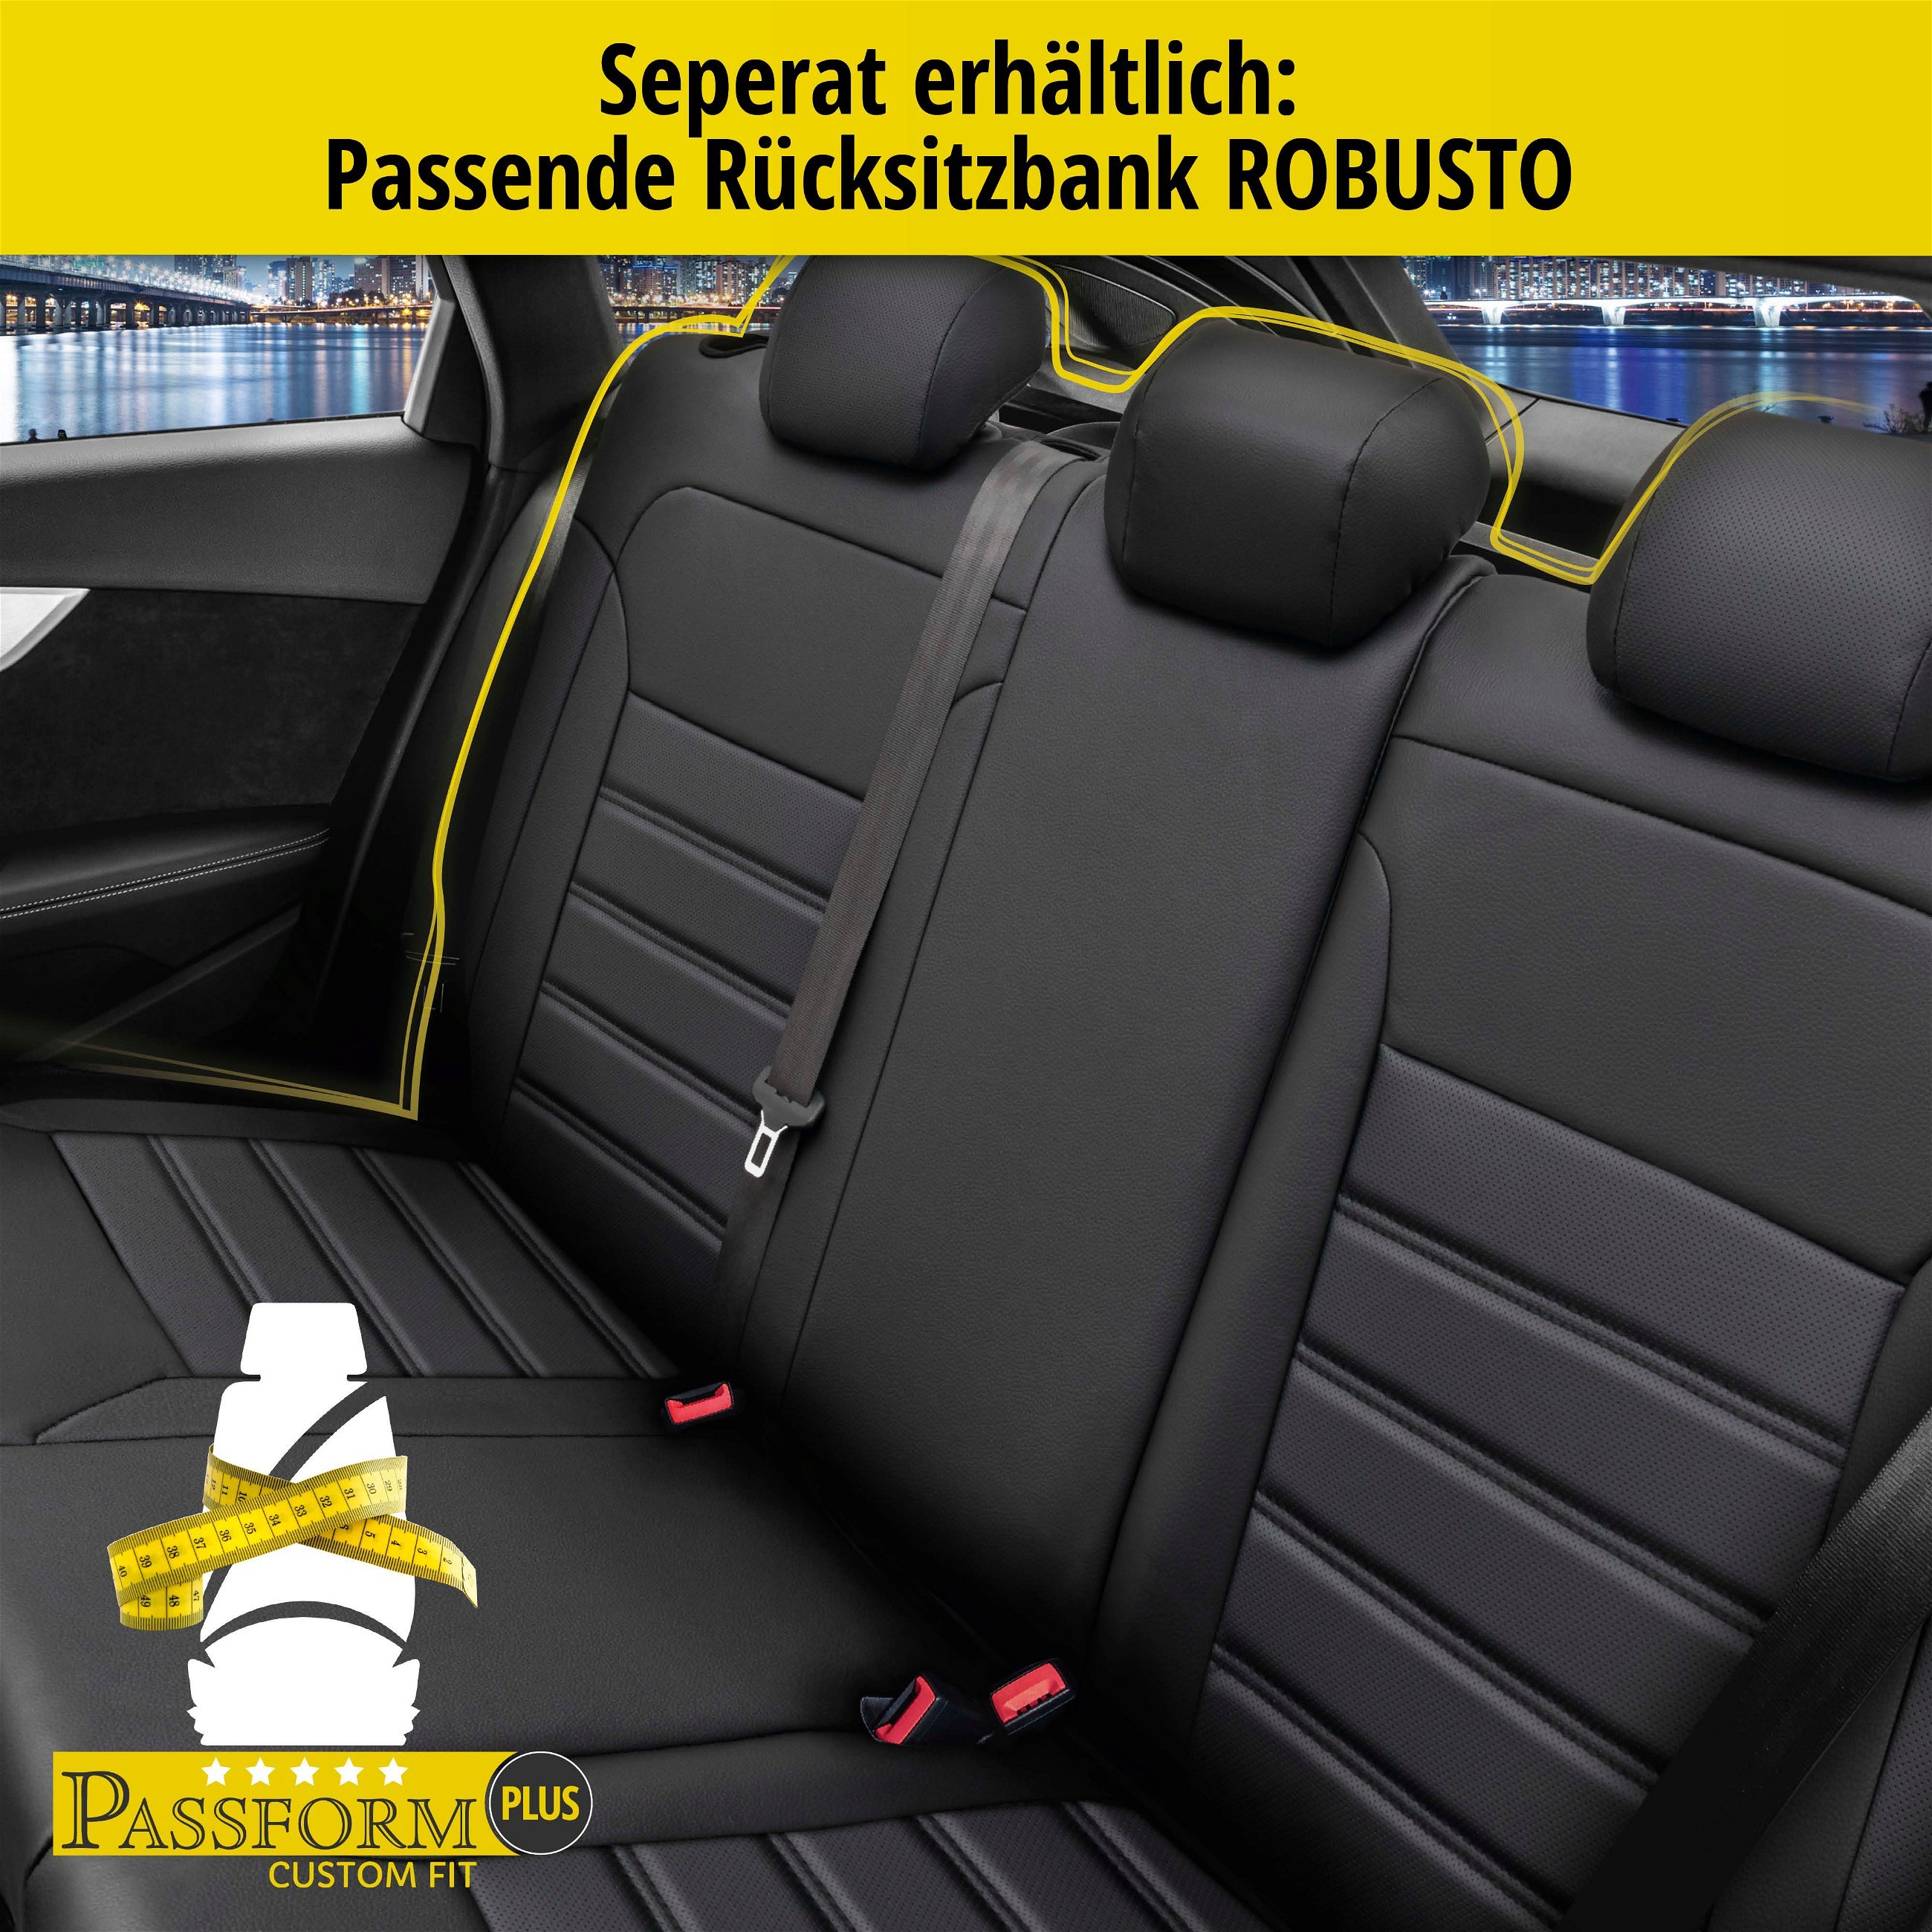 Passform Sitzbezug Robusto für BMW 1 (E87) 02/2003-01/2013, 2 Einzelsitzbezüge für Normalsitze